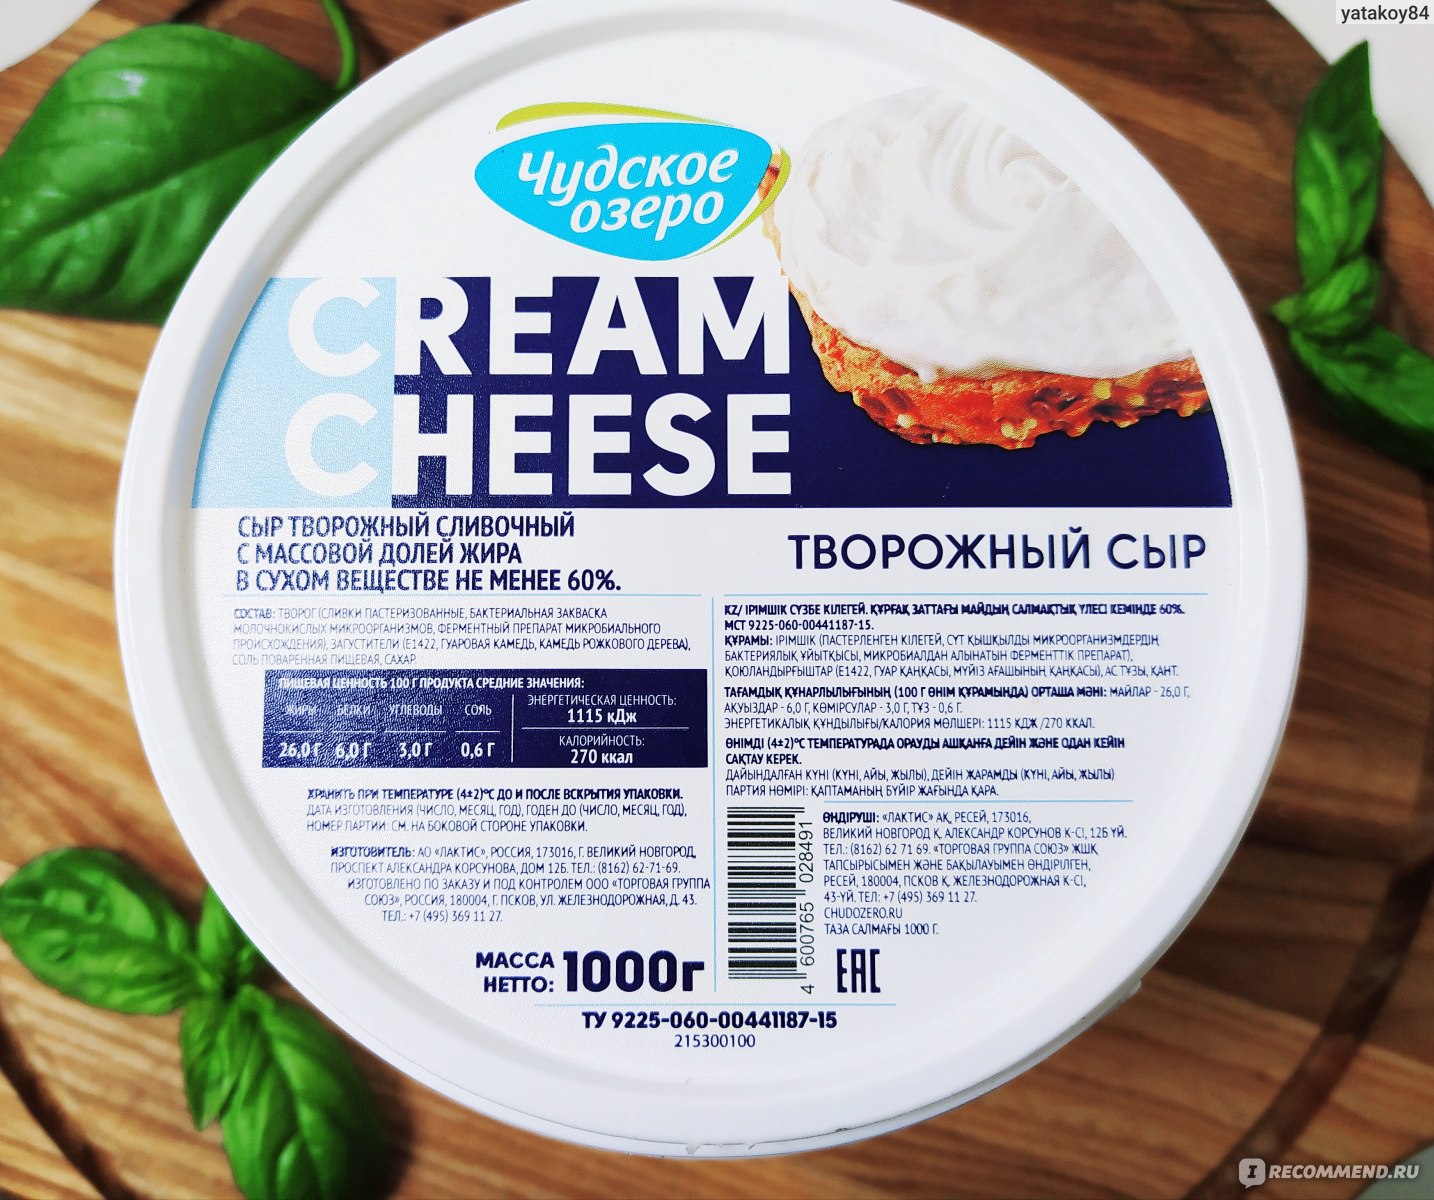 Сыр творожный сливочный с массовой долей жира в сухом веществе не менее 60% ТЗ «Чудское озеро» ведро 1 кг